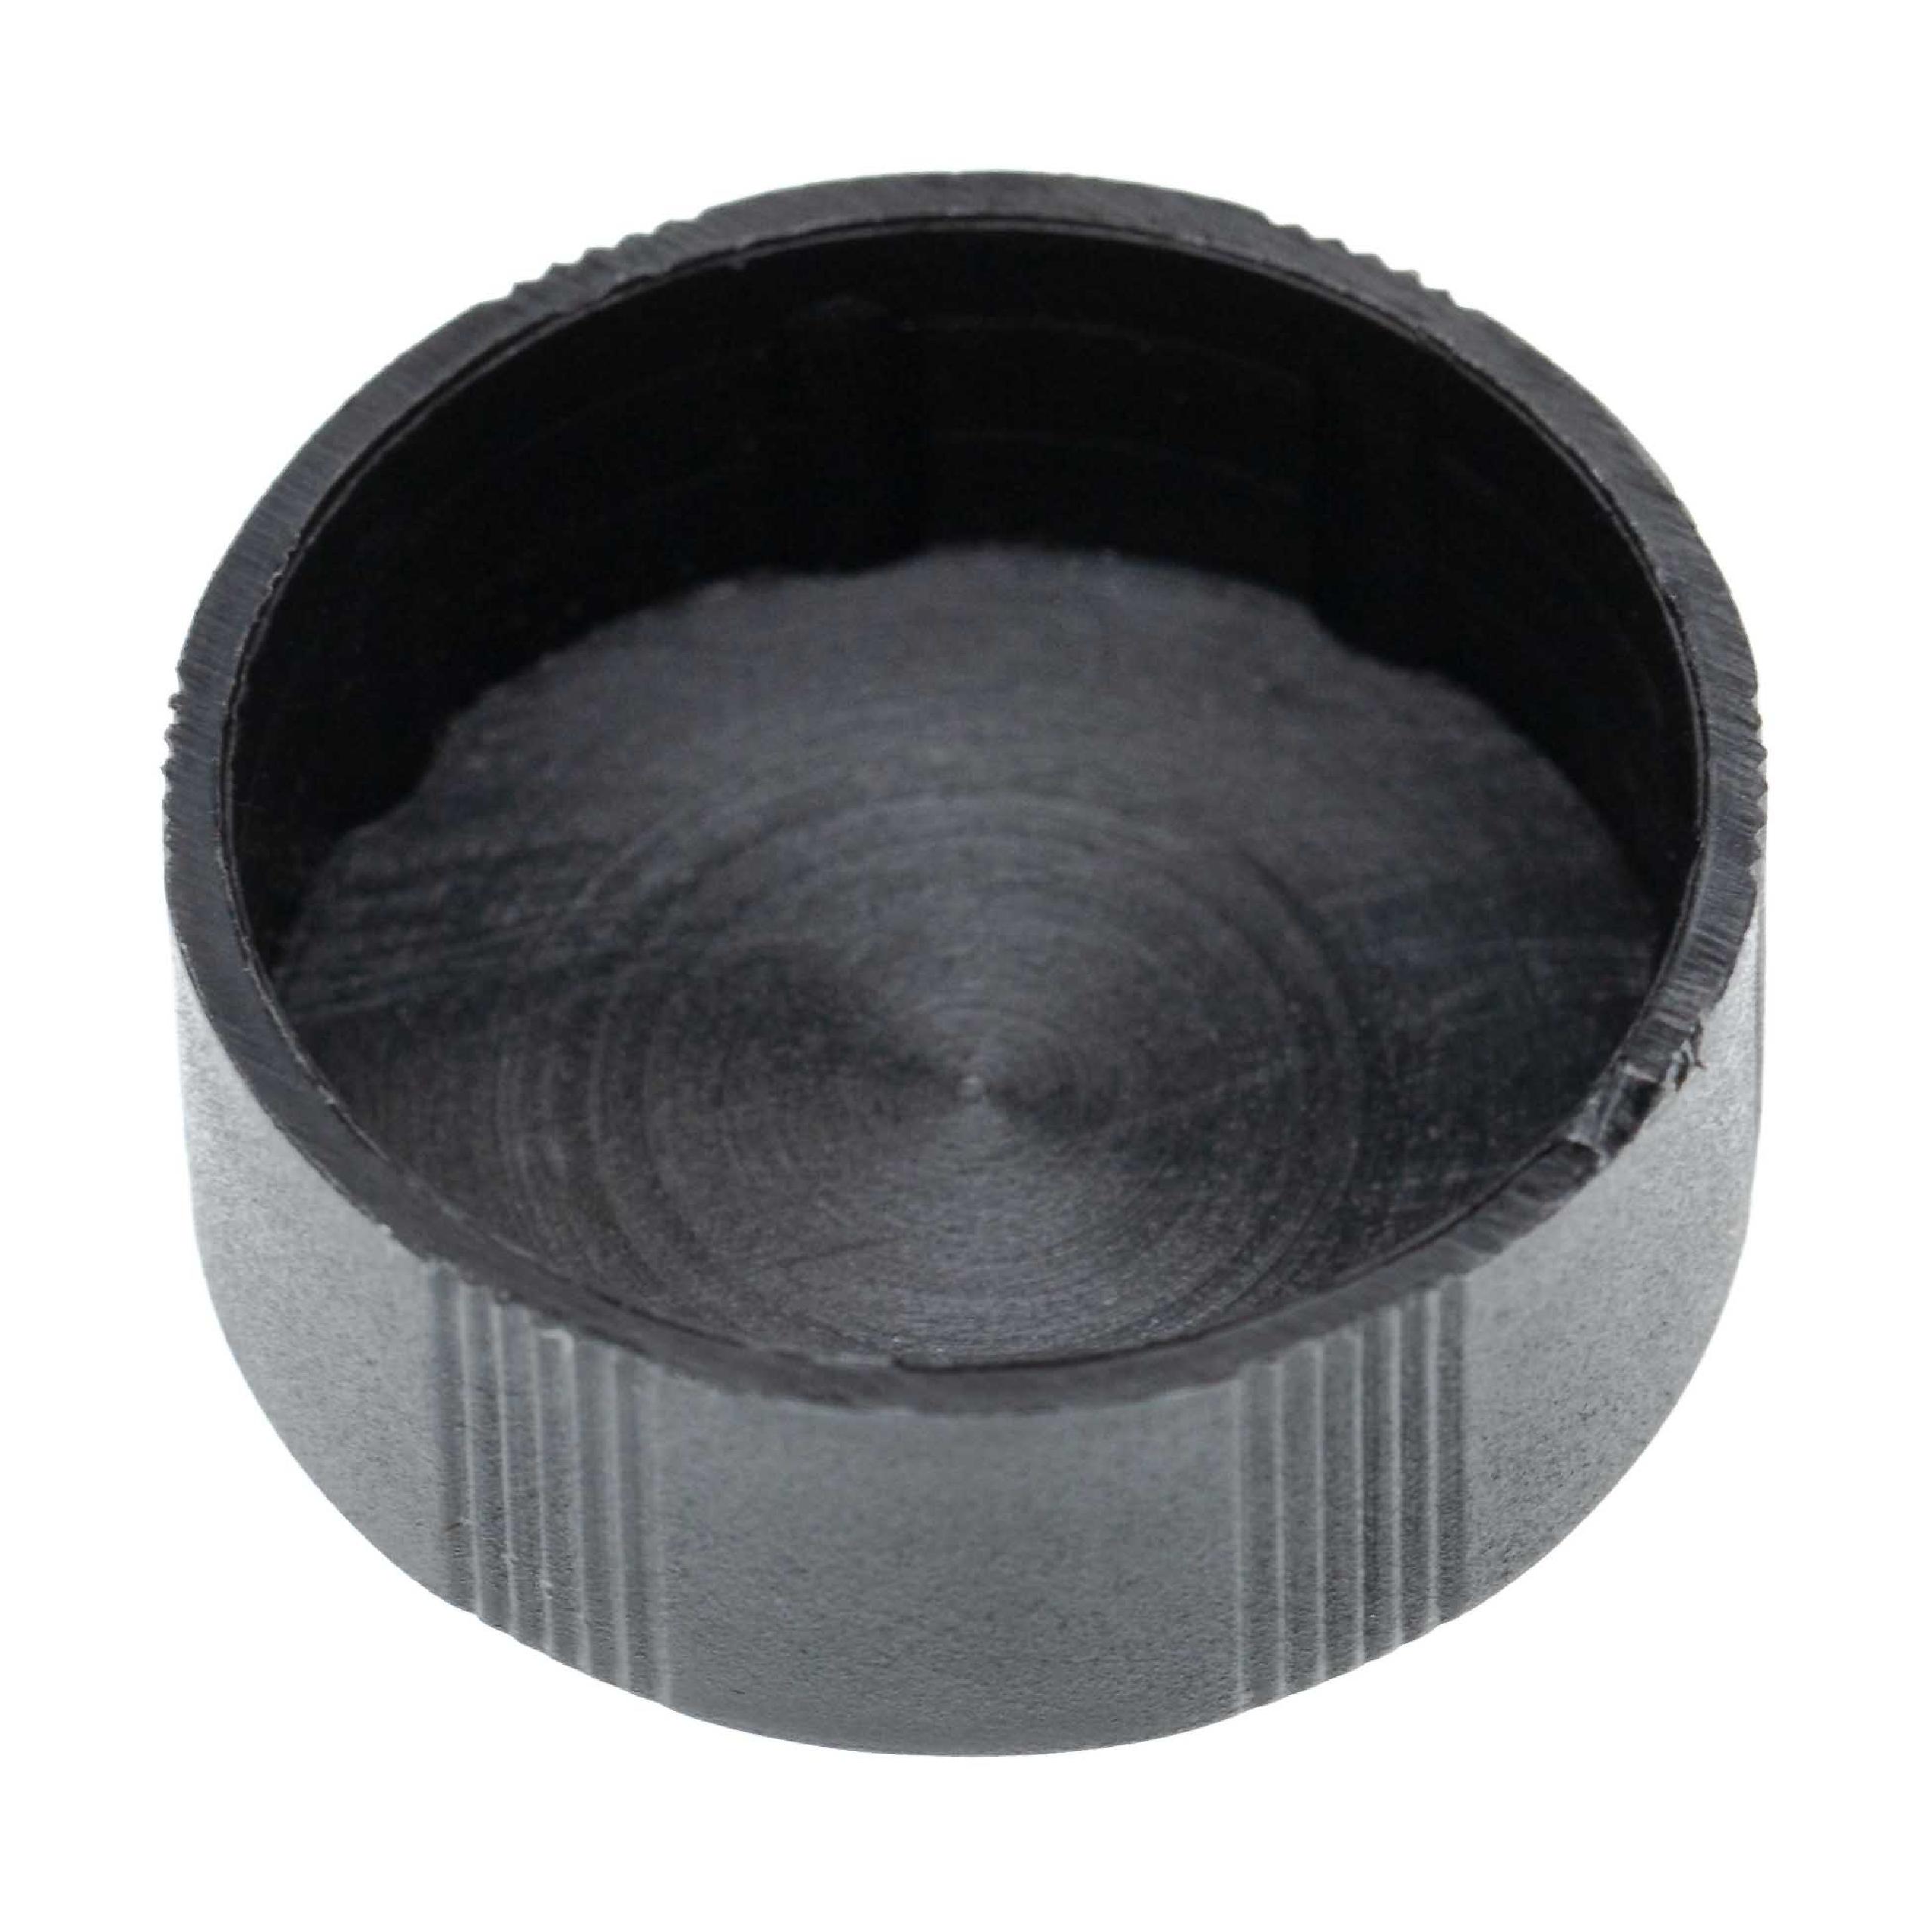 Tappo coprilenti per obiettivi binocolo con diametro 30 mm - nero, a incastro